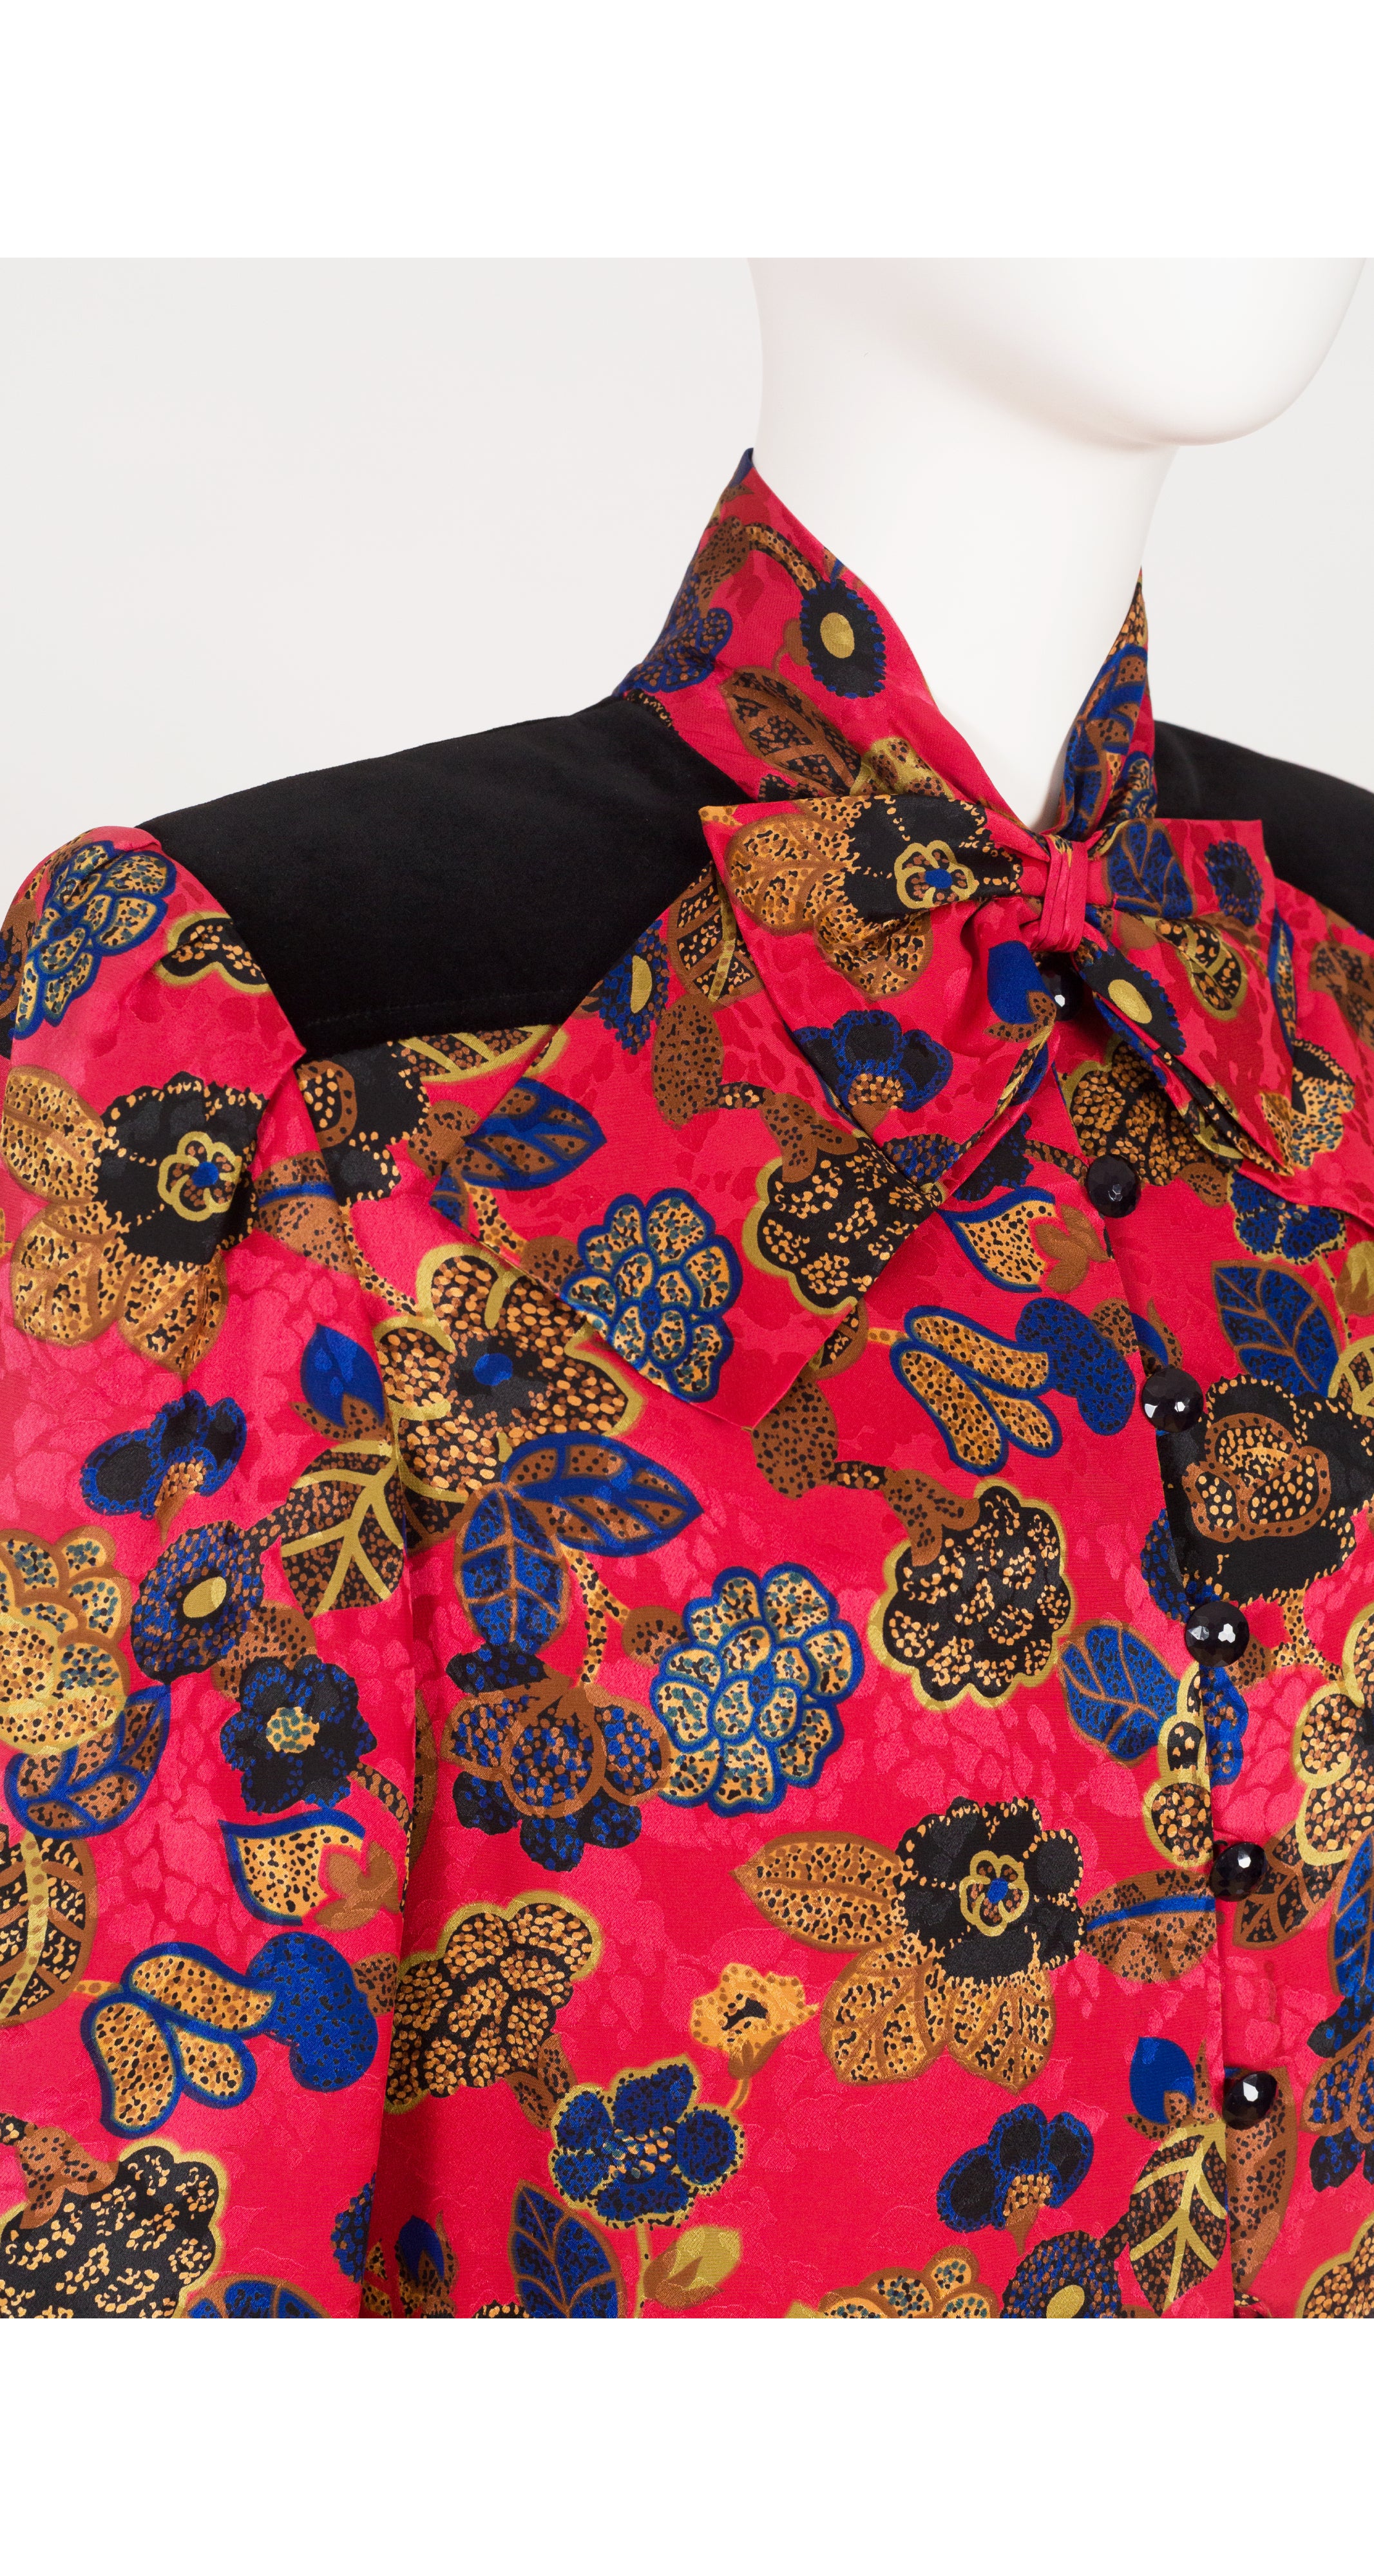 1980s Floral Silk Jacquard & Velvet Bow Dress